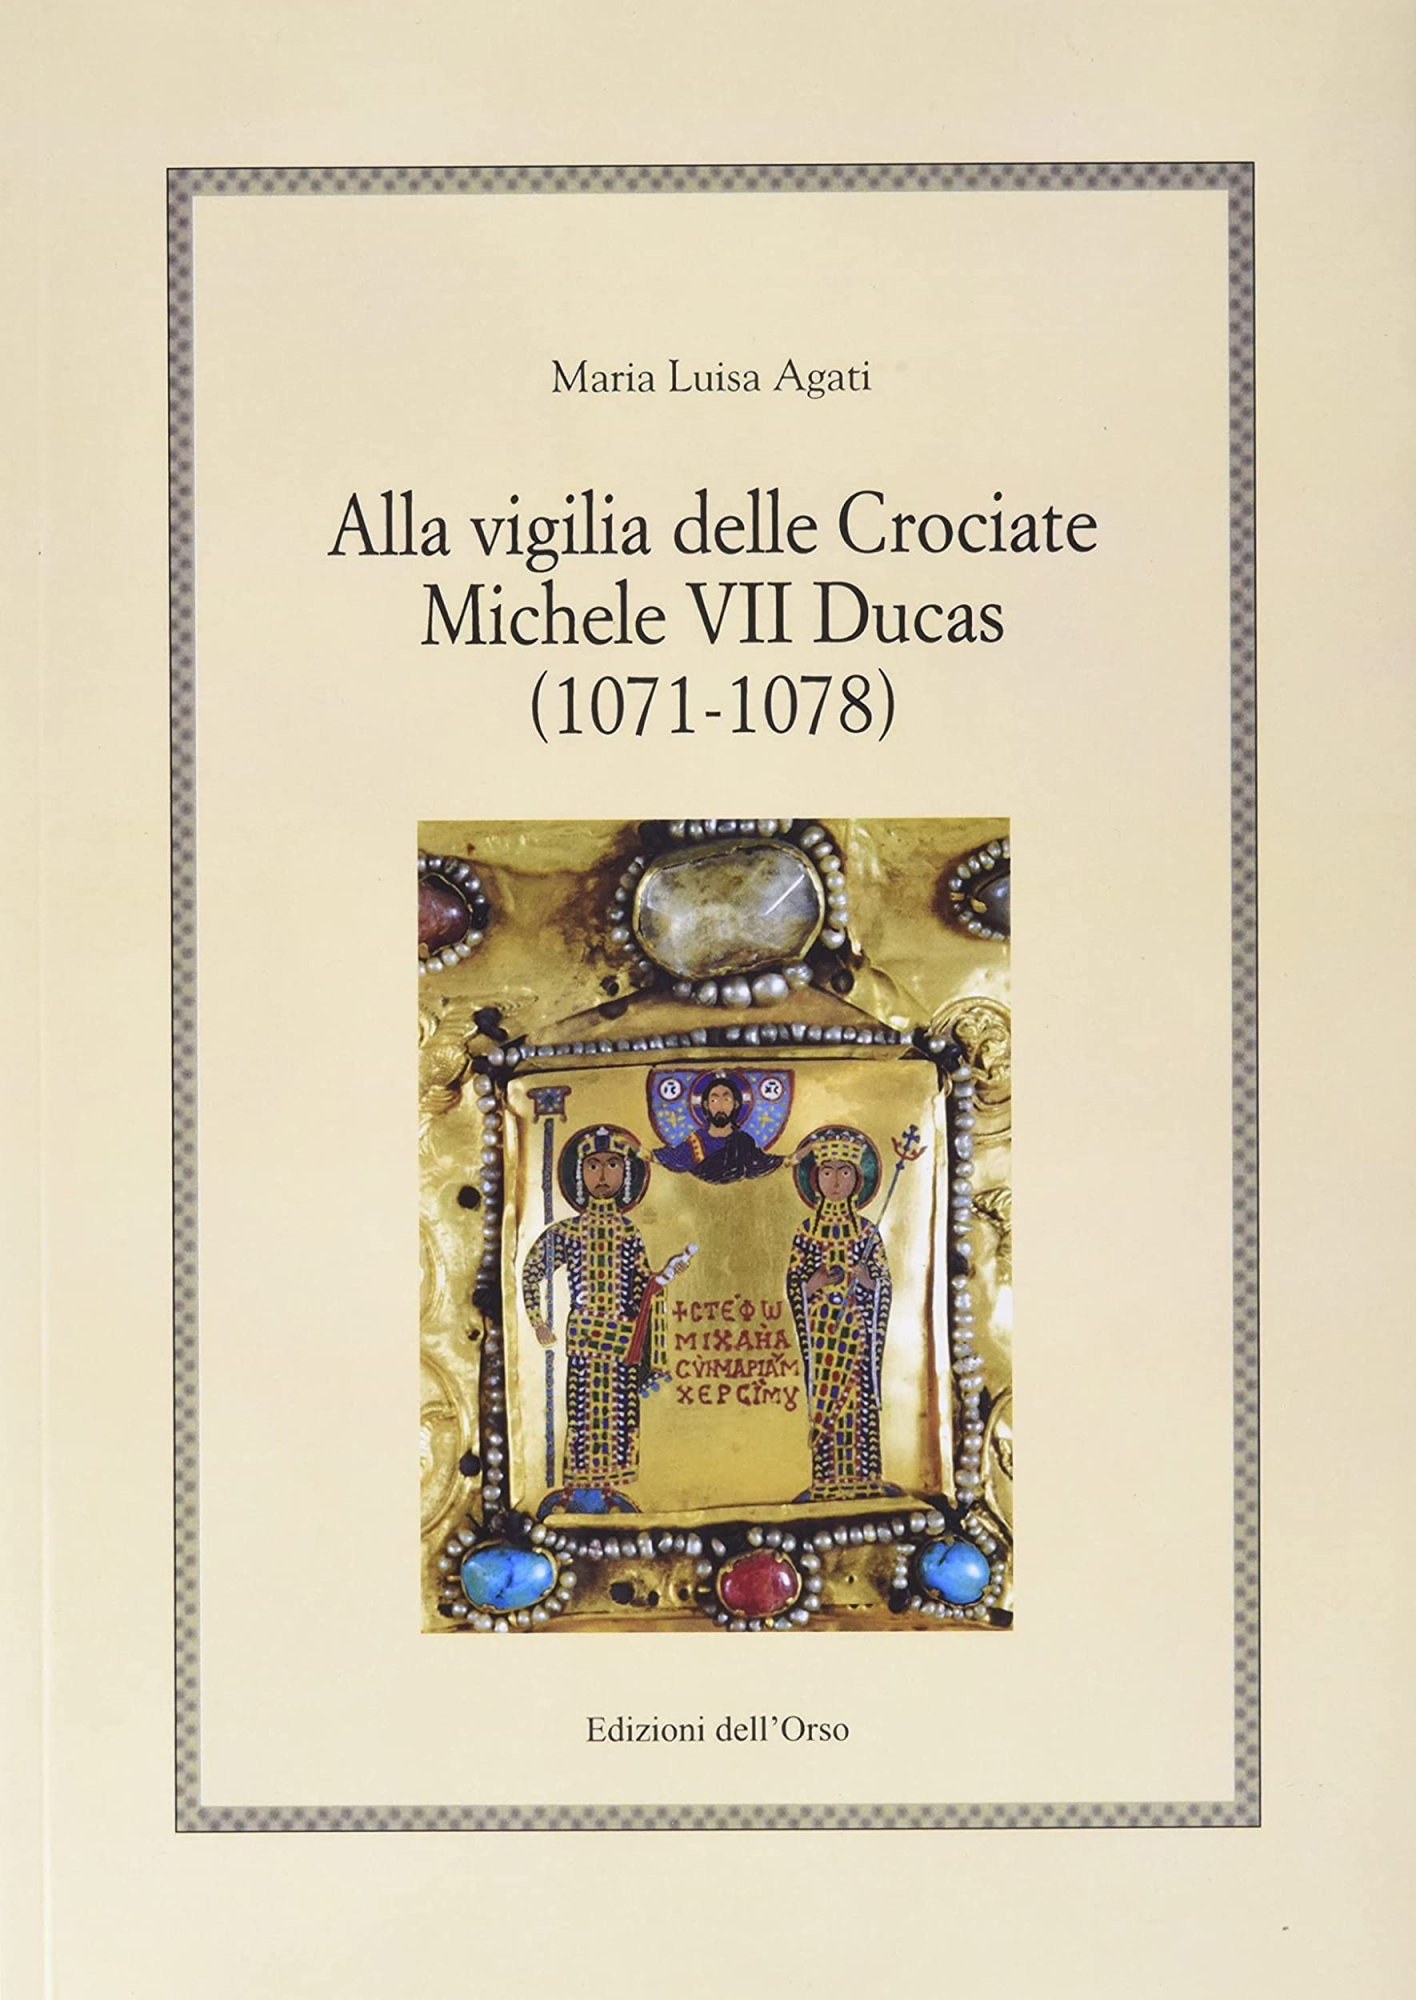 Libri Agati Maria Luisa - Alla Vigilia Delle Crociate Michele VII Ducas (1071-1078) NUOVO SIGILLATO, EDIZIONE DEL 01/01/2022 SUBITO DISPONIBILE